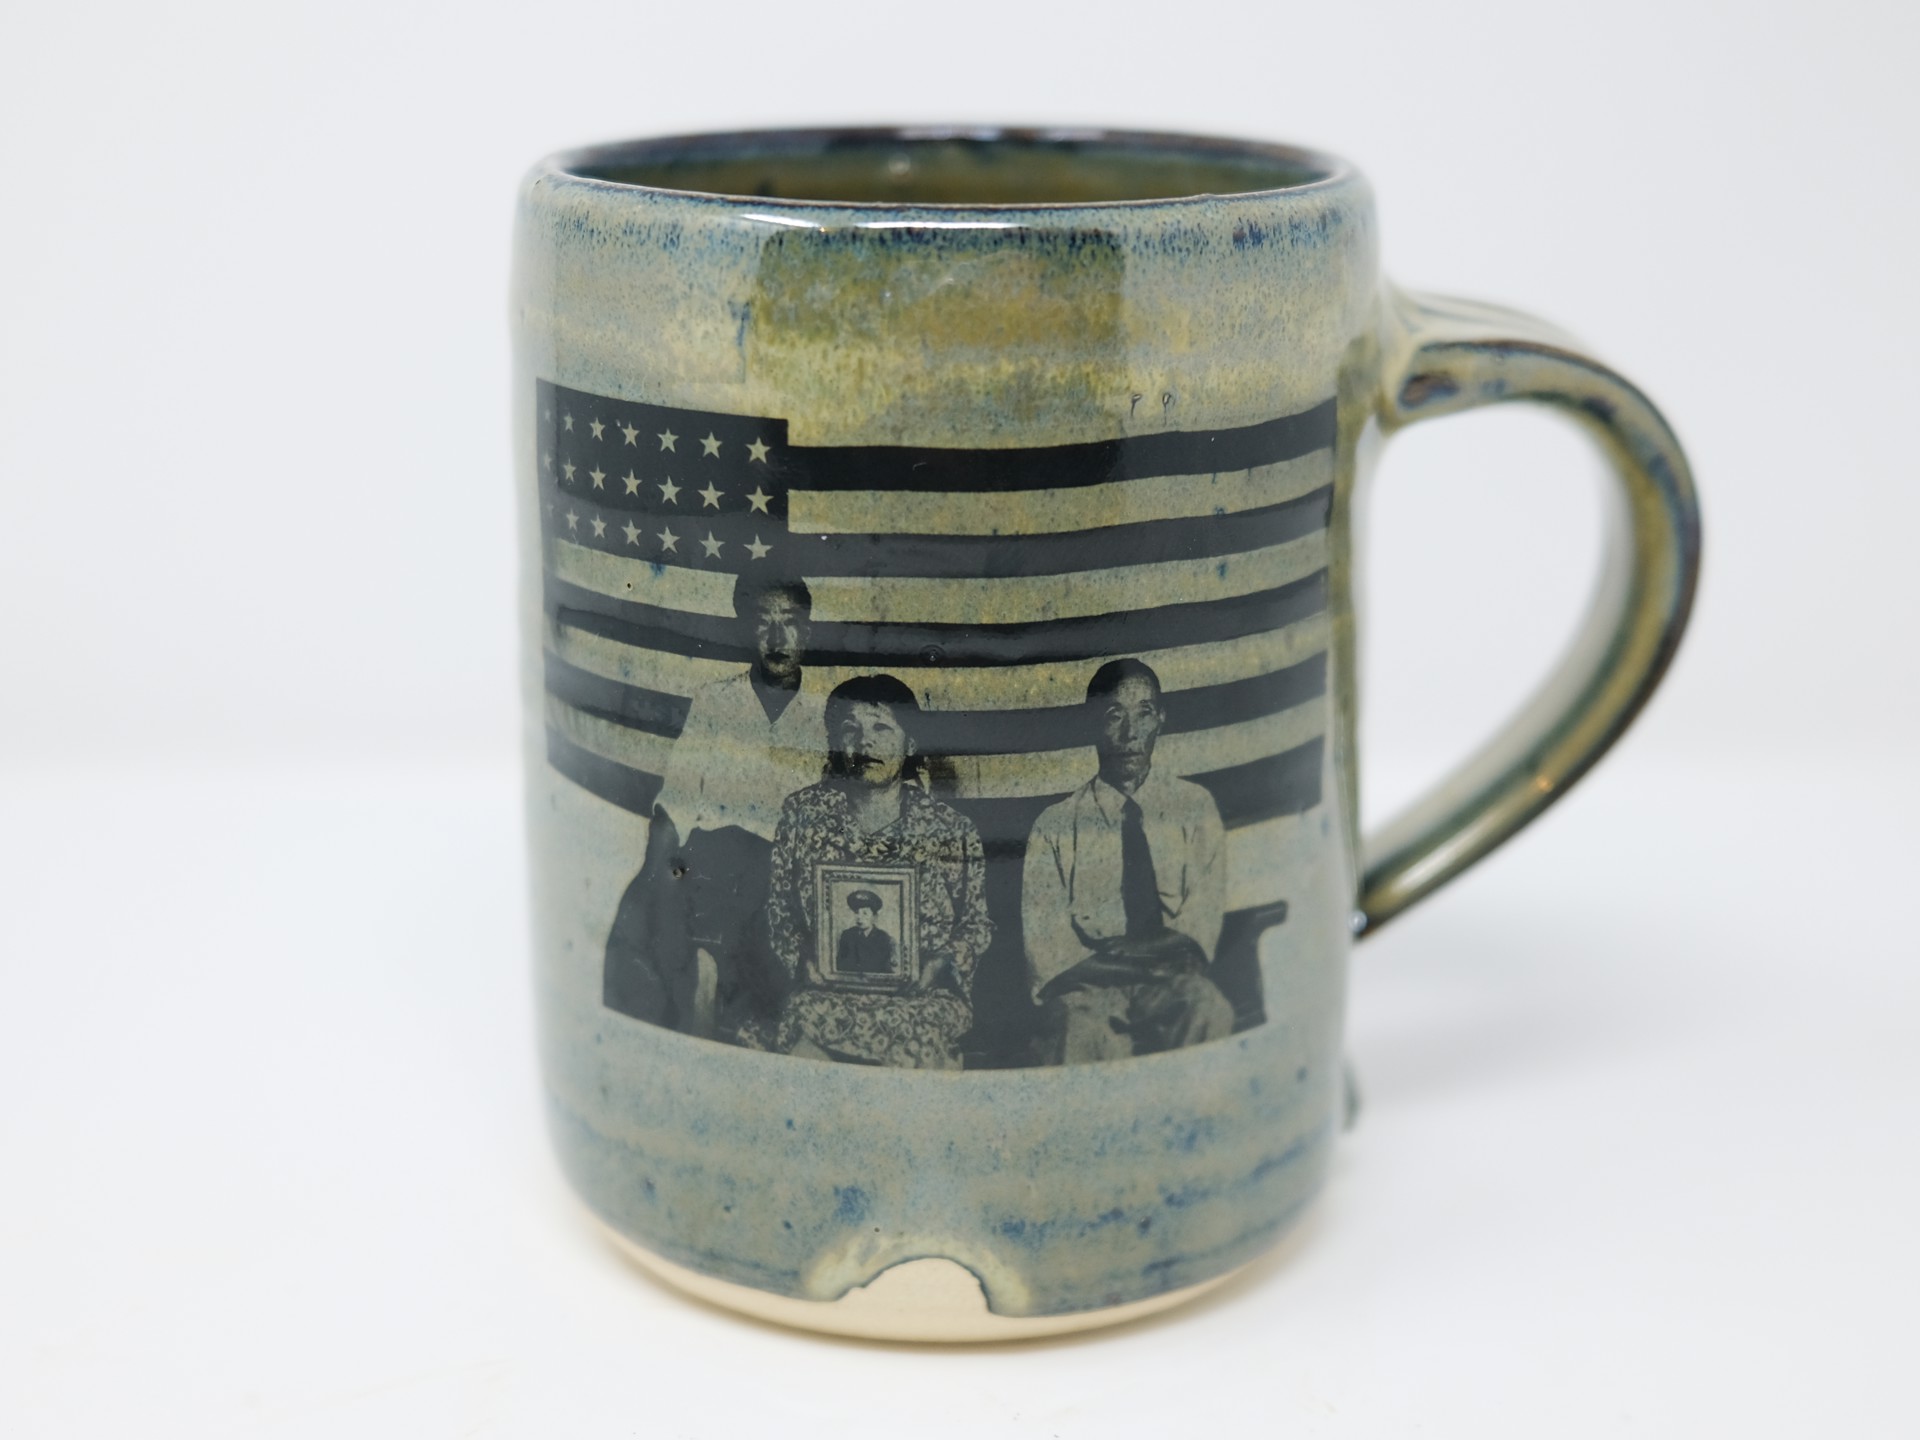 Hirano Family Mug by Randy McClelland